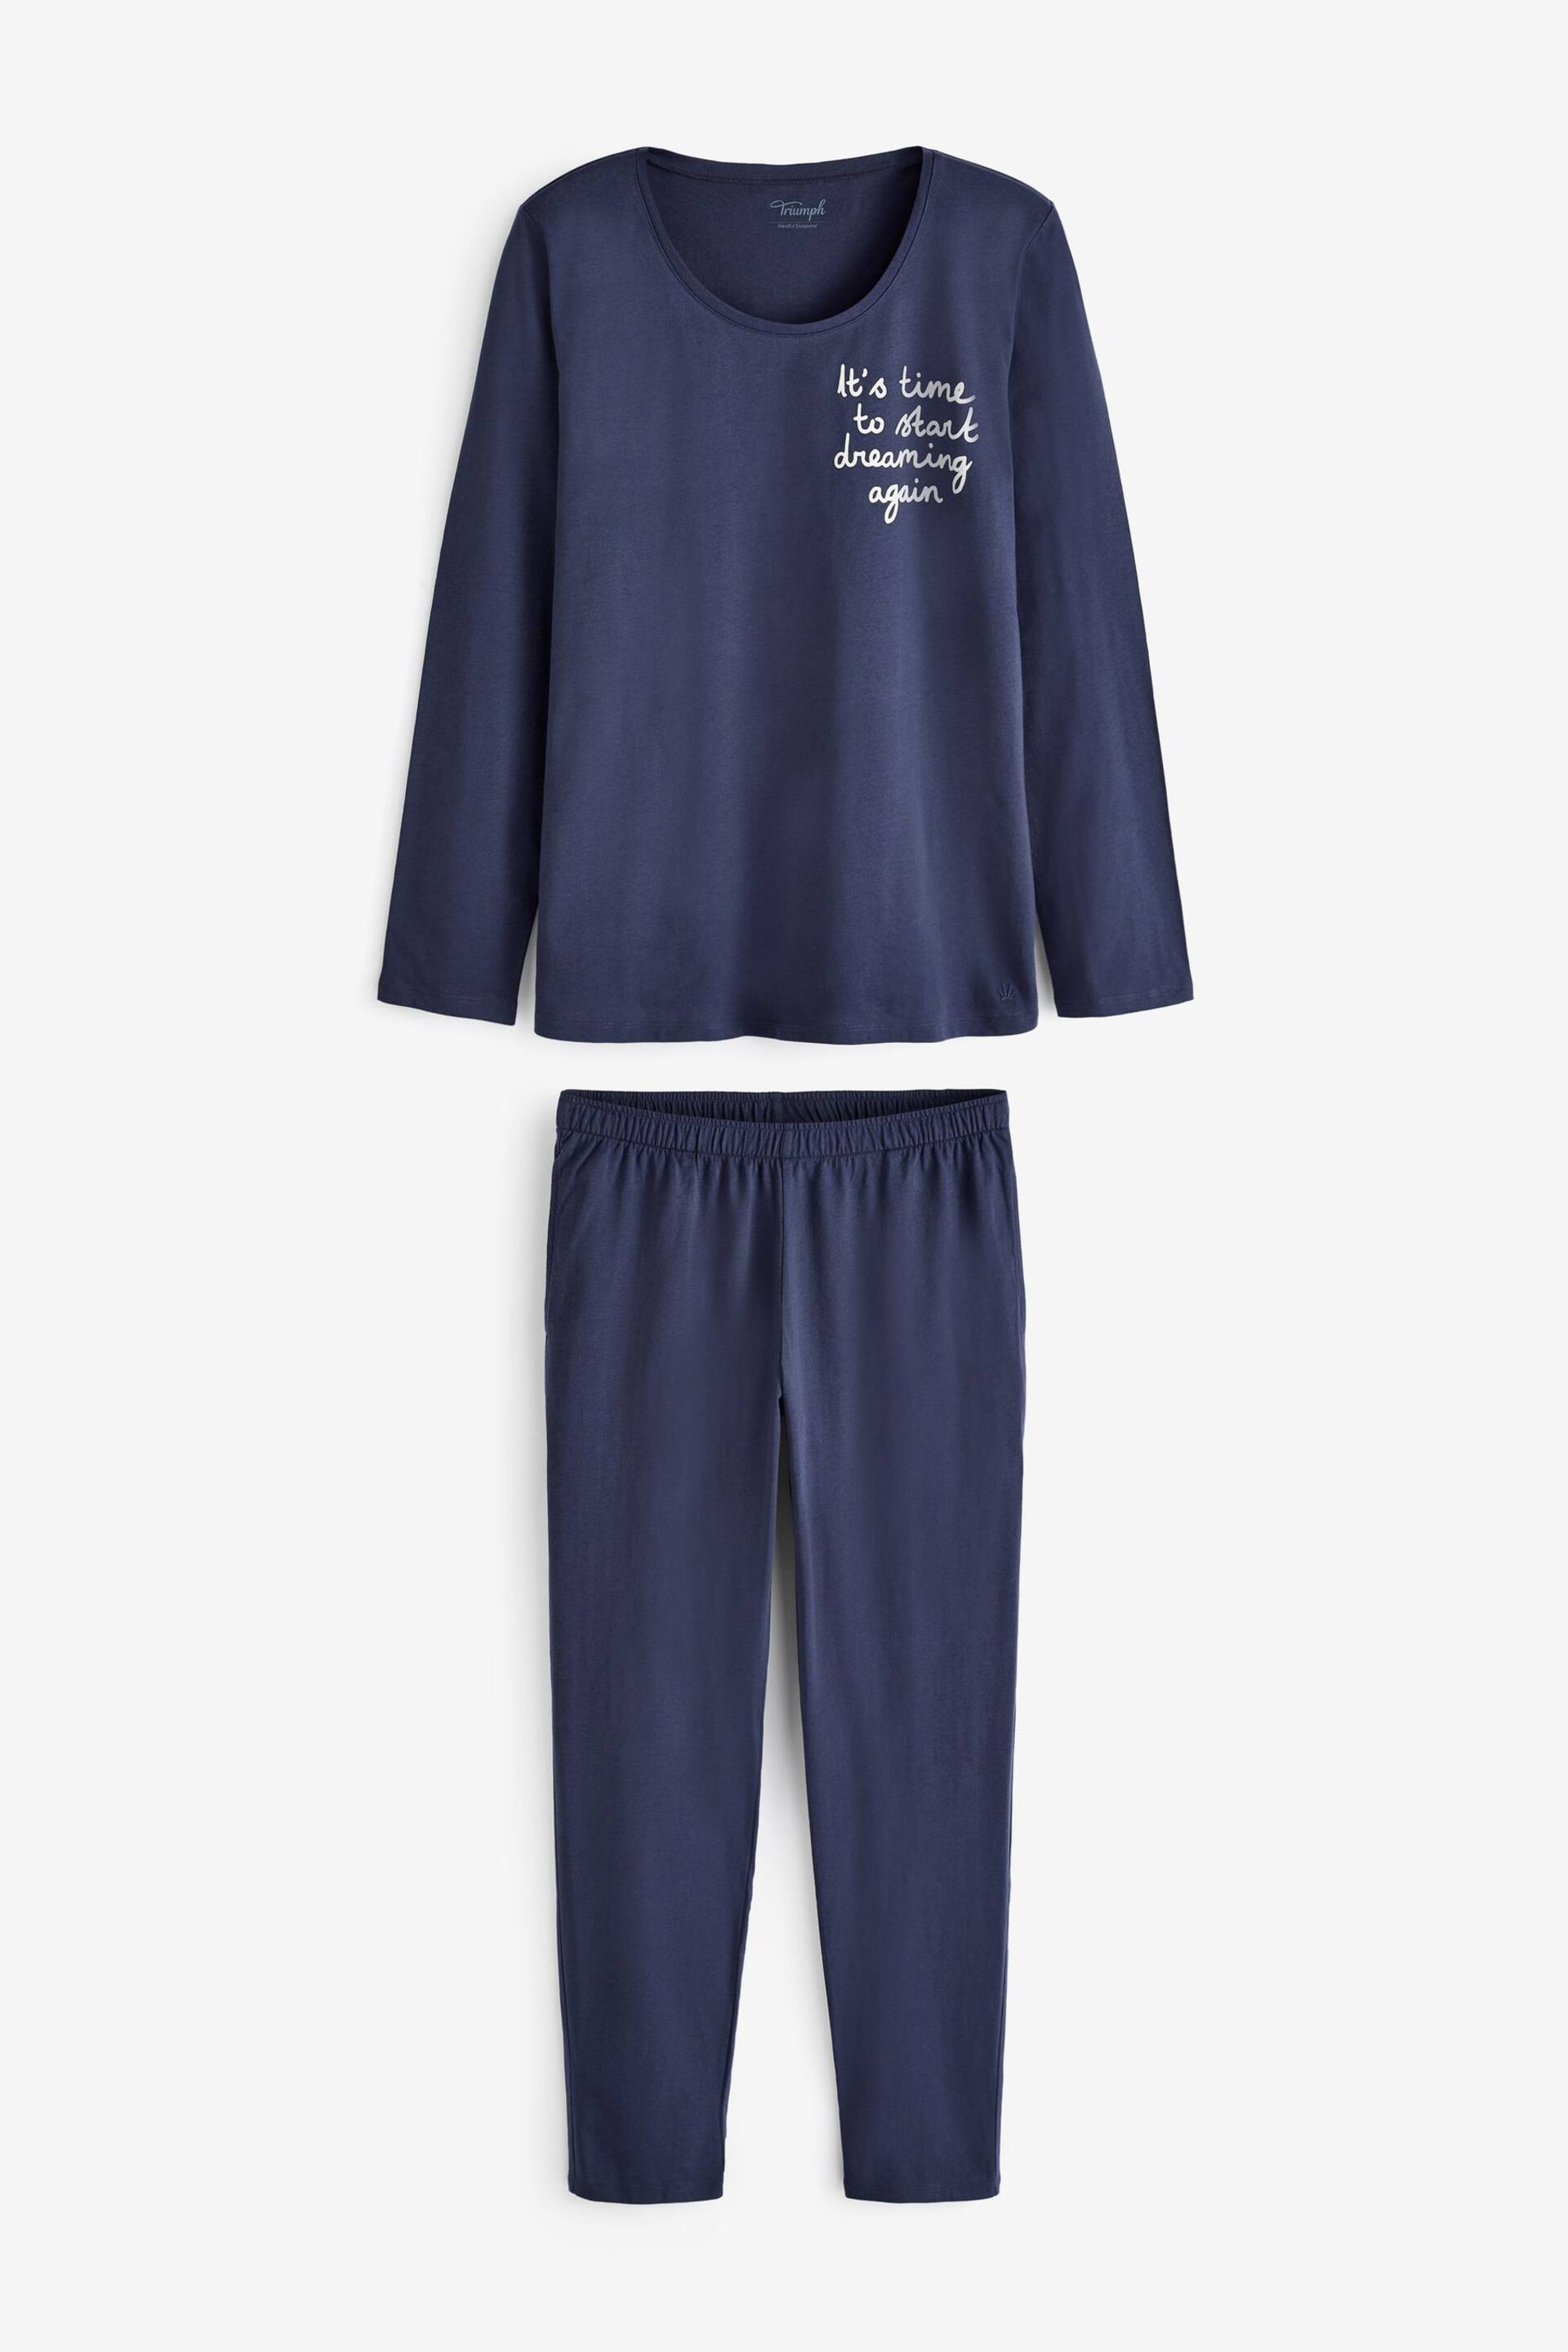 Triumph Long Sleeve Pyjamas - Image 3 of 5